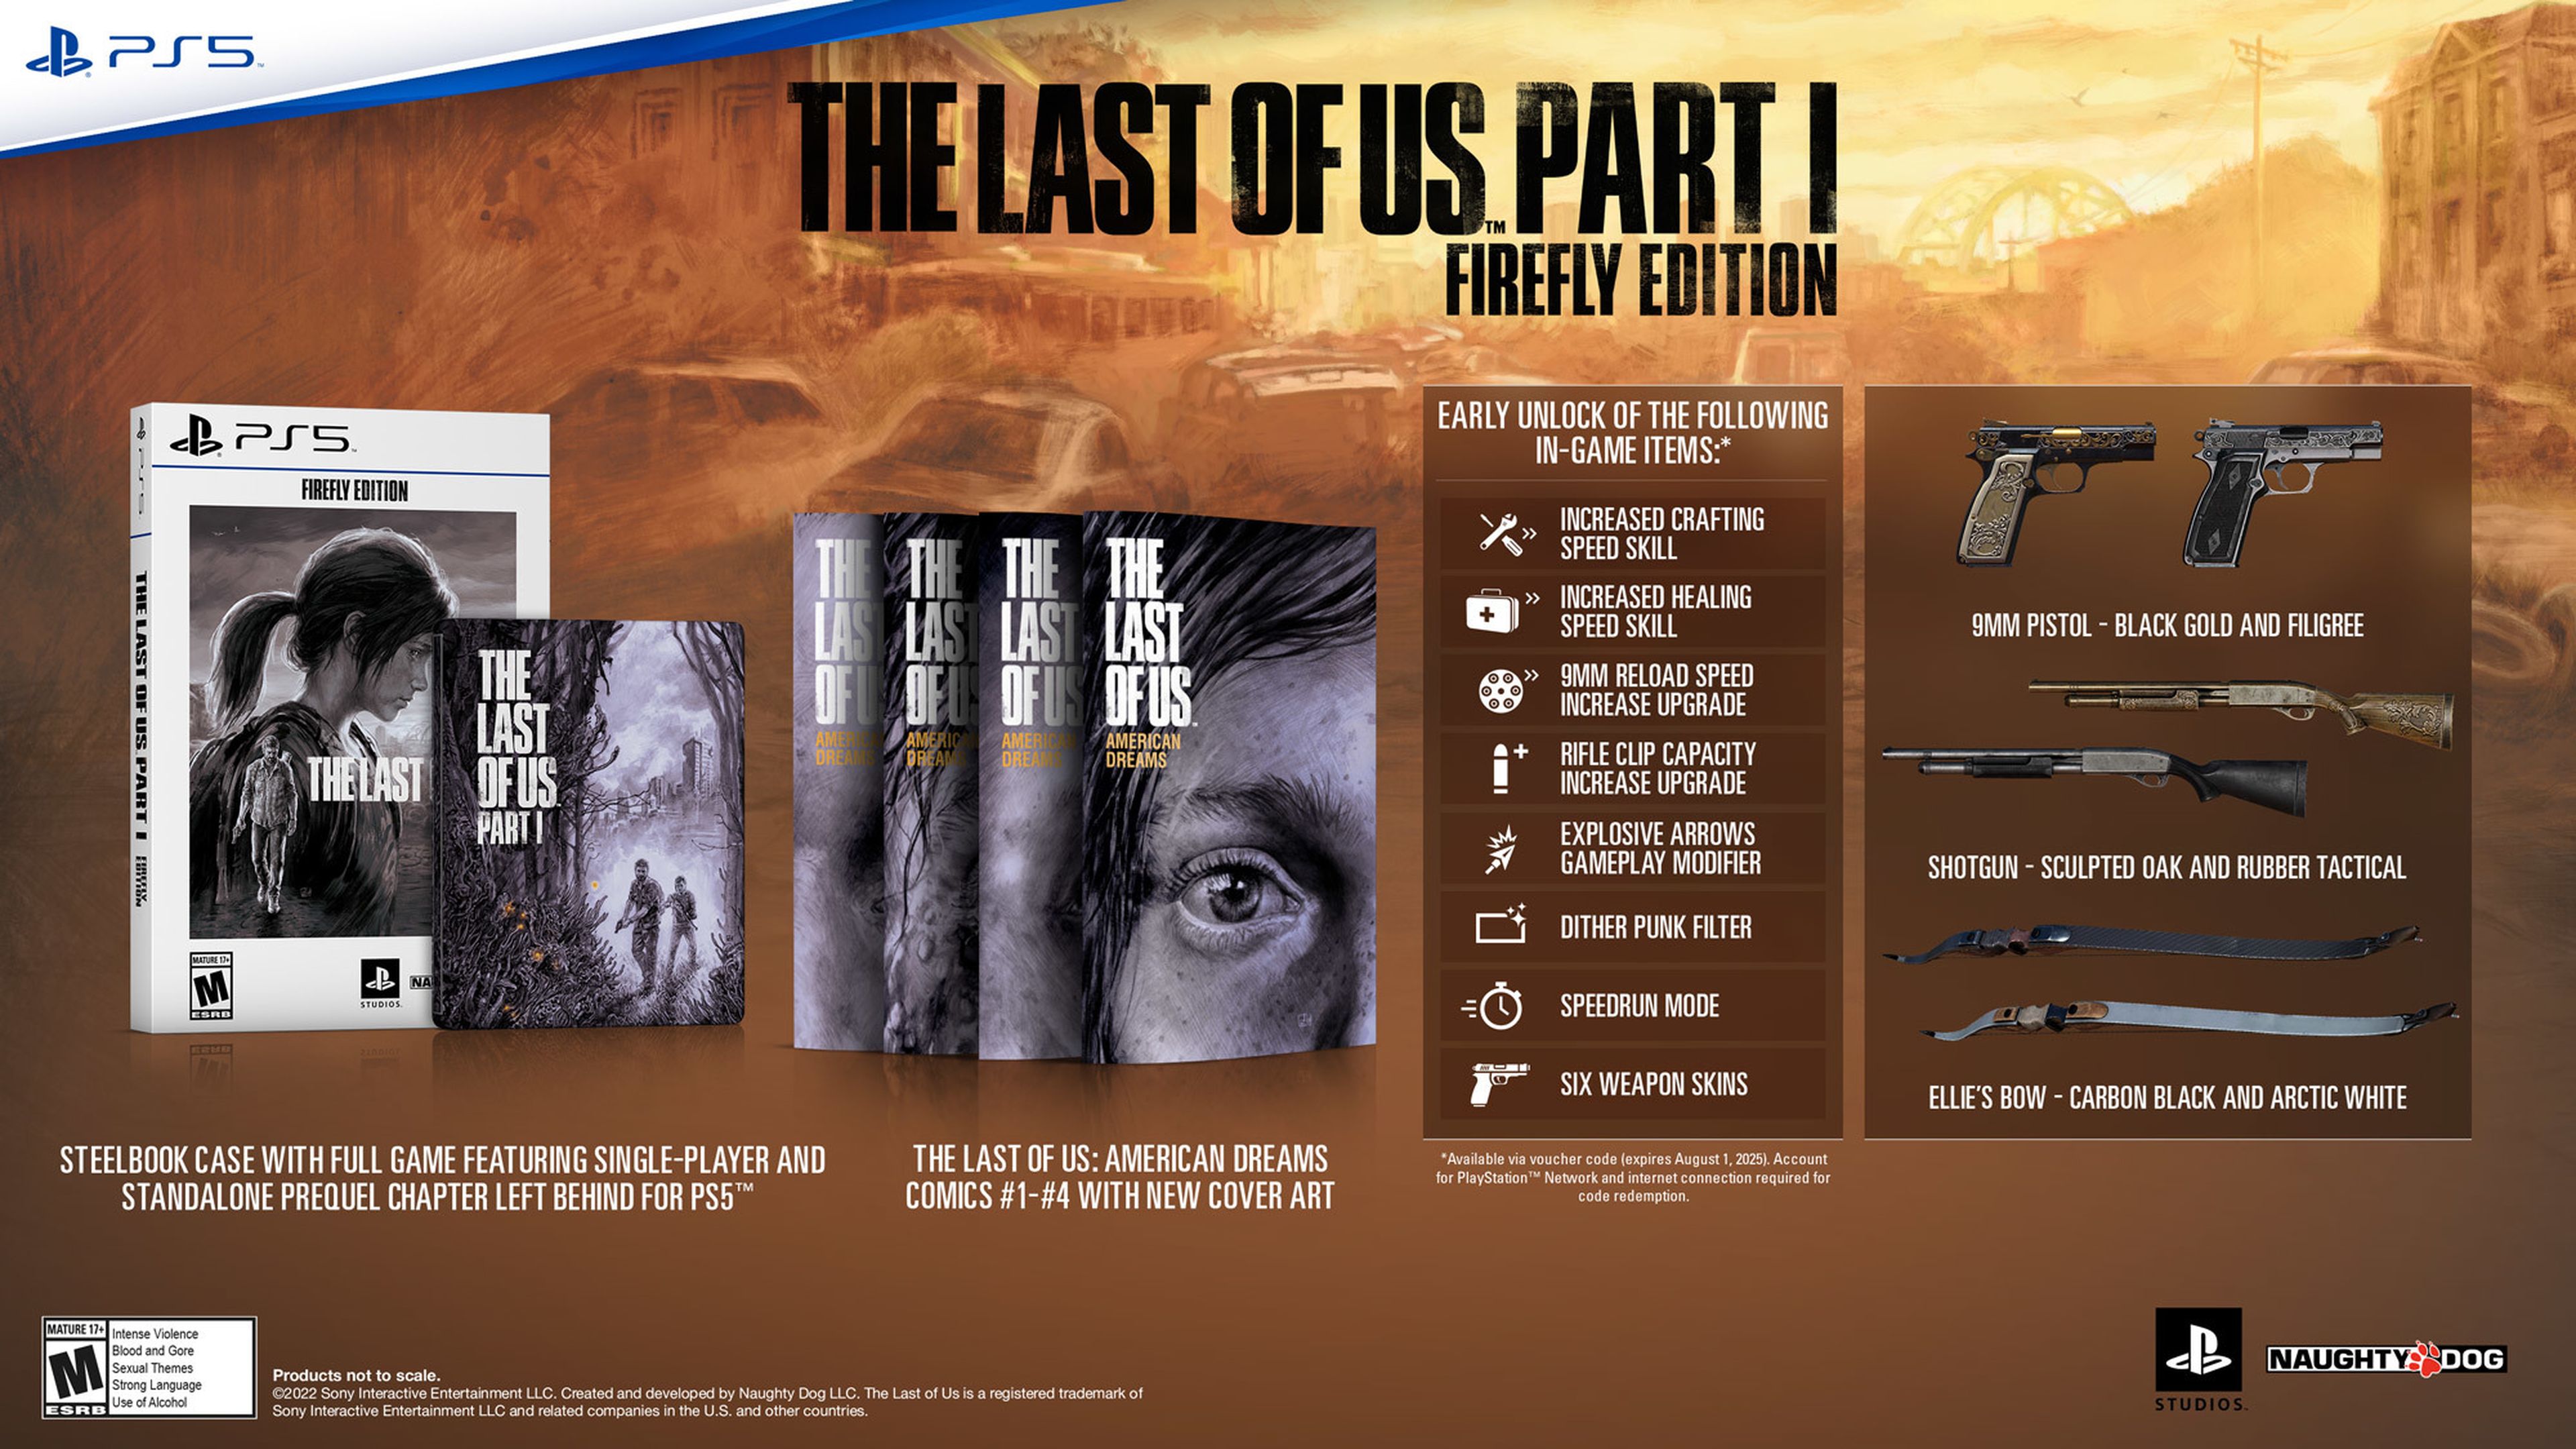 The Last of Us Part 1 anunciado para PS5 y PC con tráiler